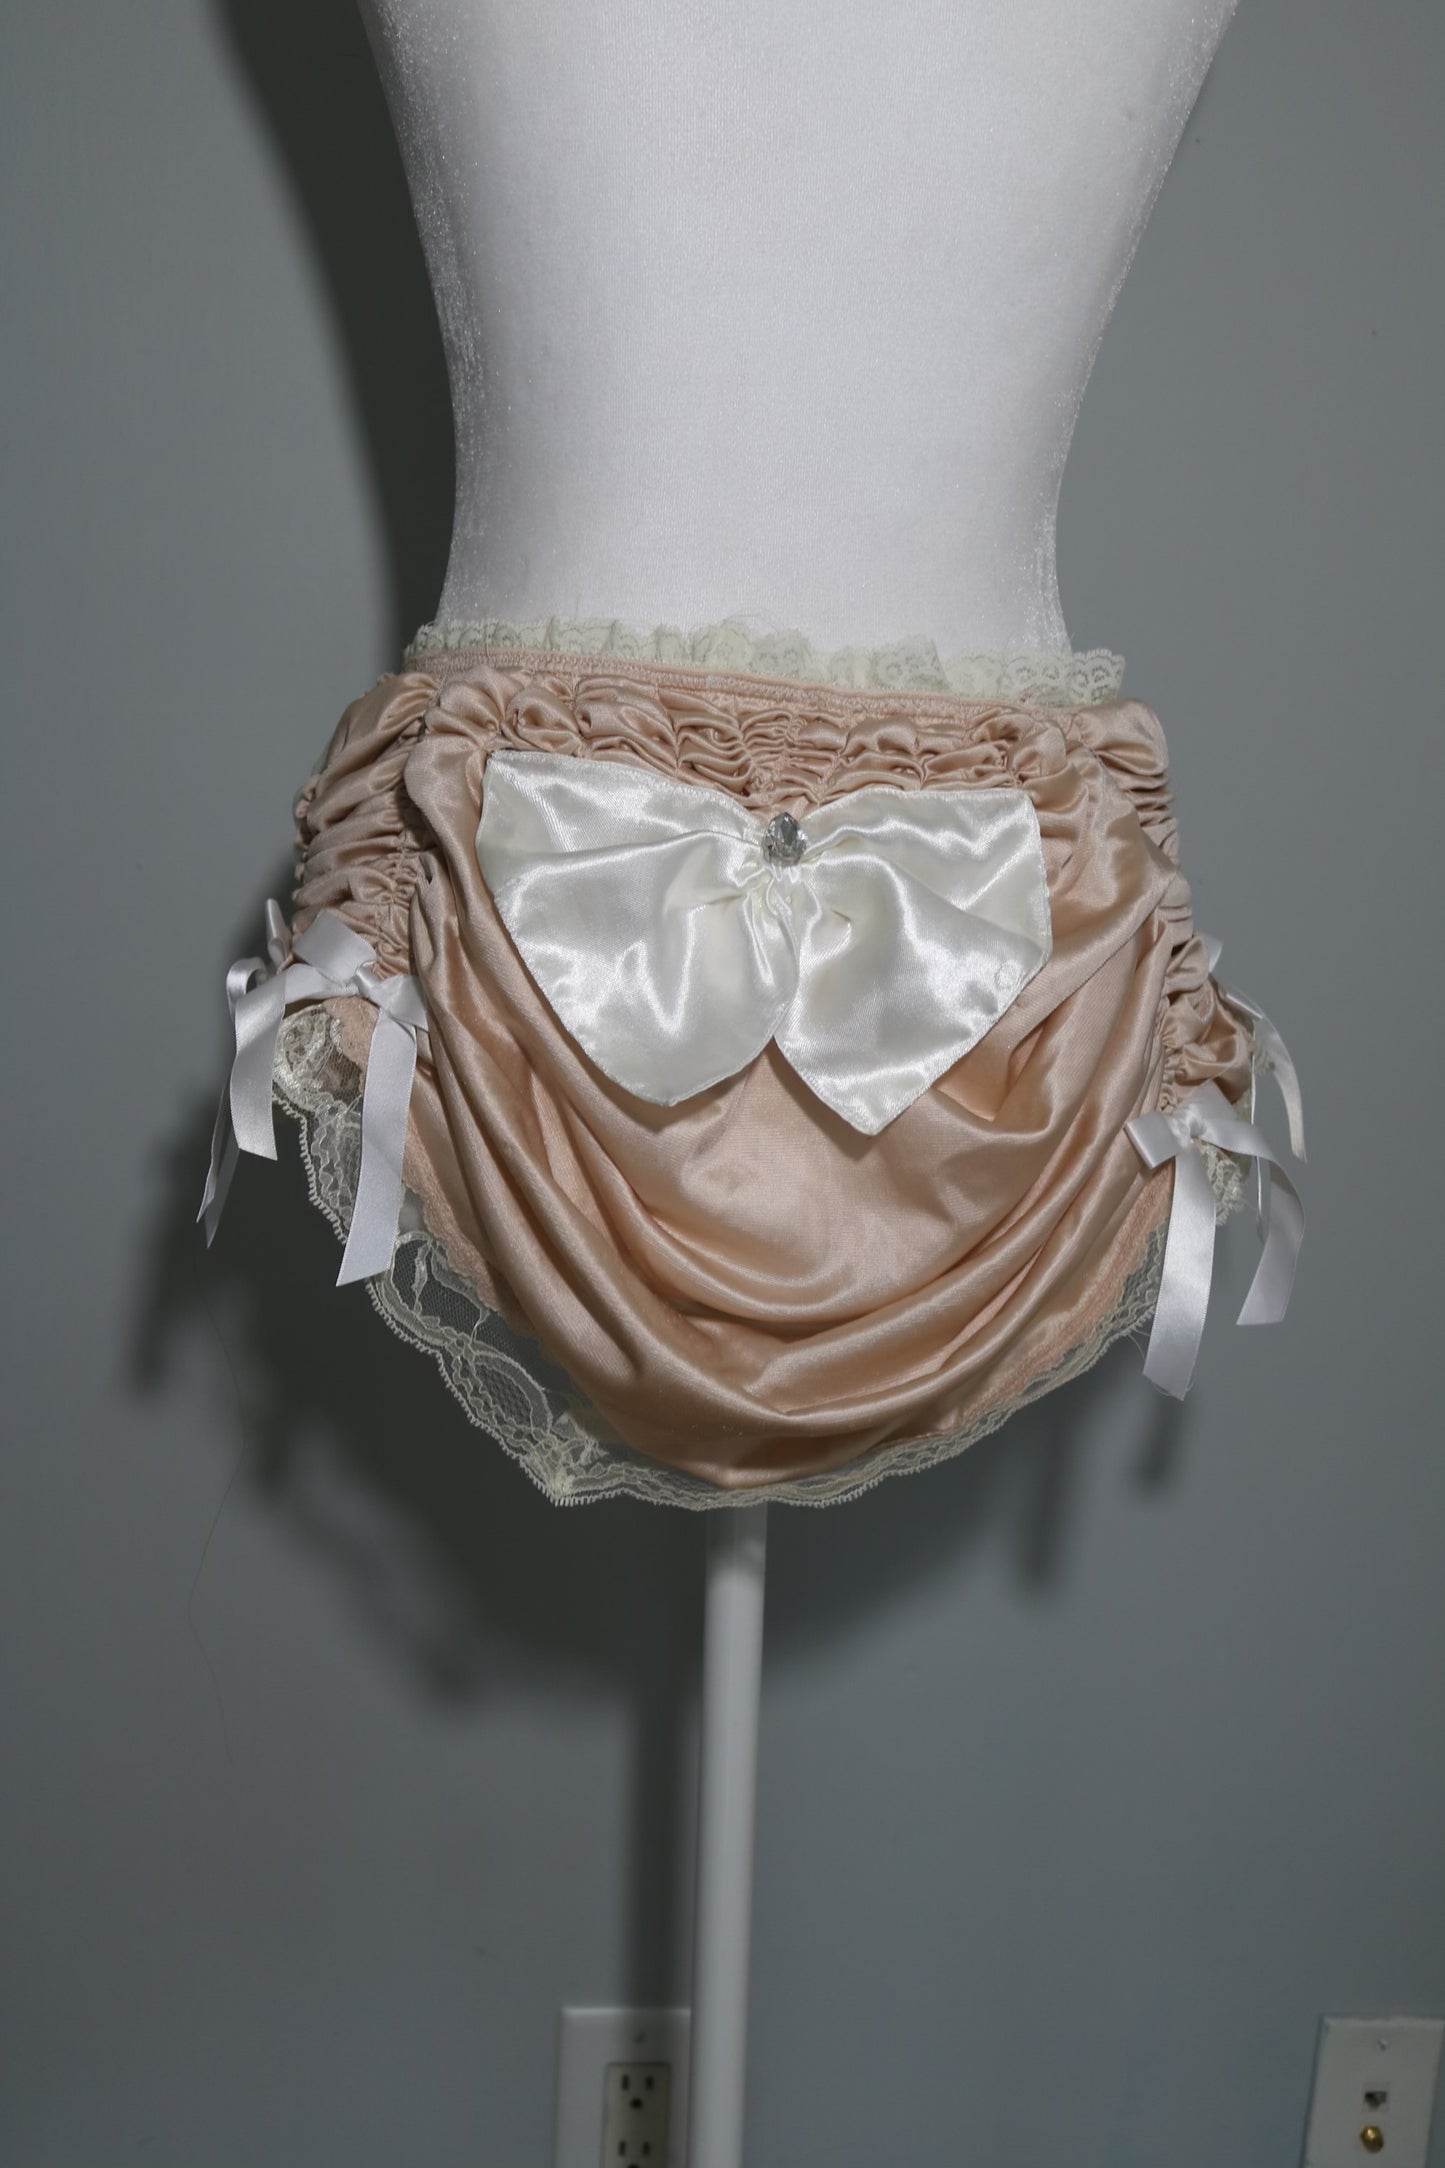 small/medium skirt